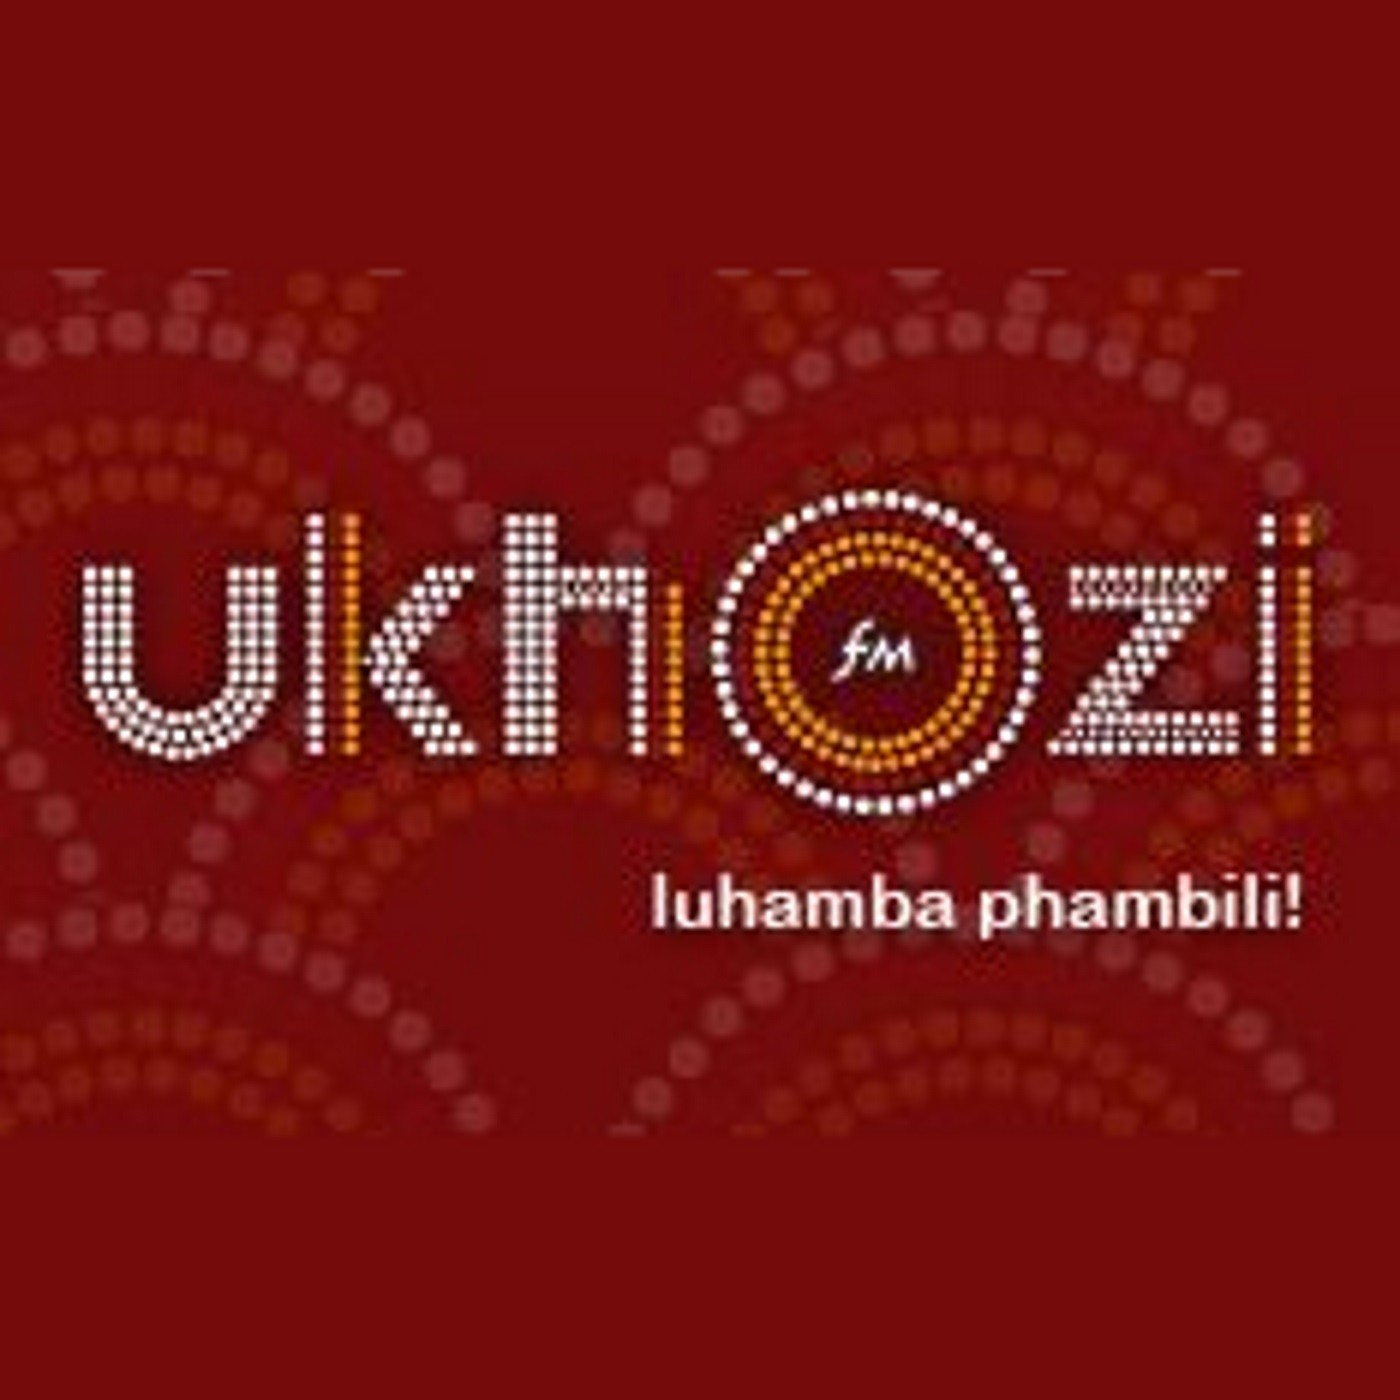 Khuthazeka no Sthembiso Zondo_Abantu besilisa abafuni ukuthethiswa